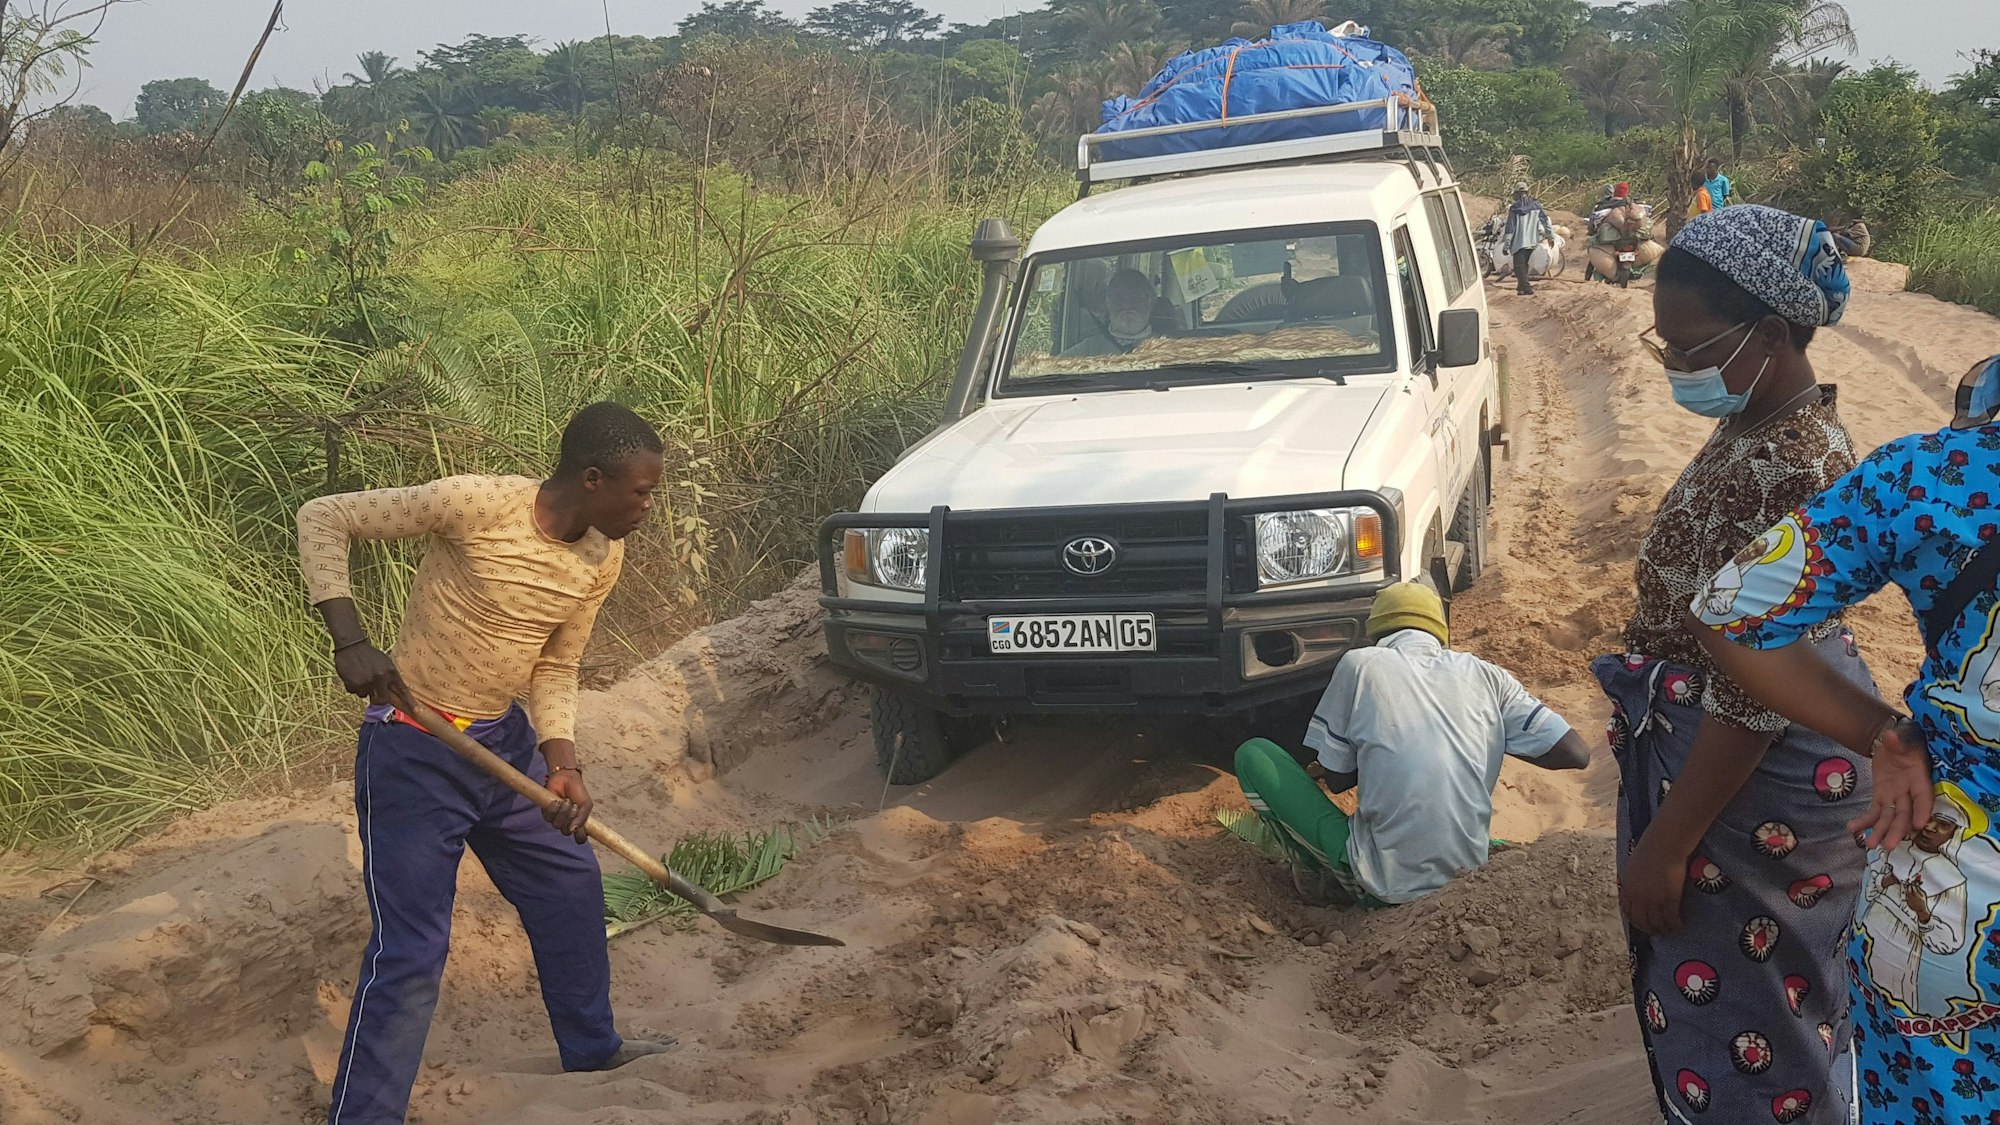 Der Wagen, mit dem Hans Jagsch und Manfred Janz durch den Kongo fuhren, steckt im Sand fest. Zwei Männer, einer mit Schaufel, graben das Fahrzeug frei.